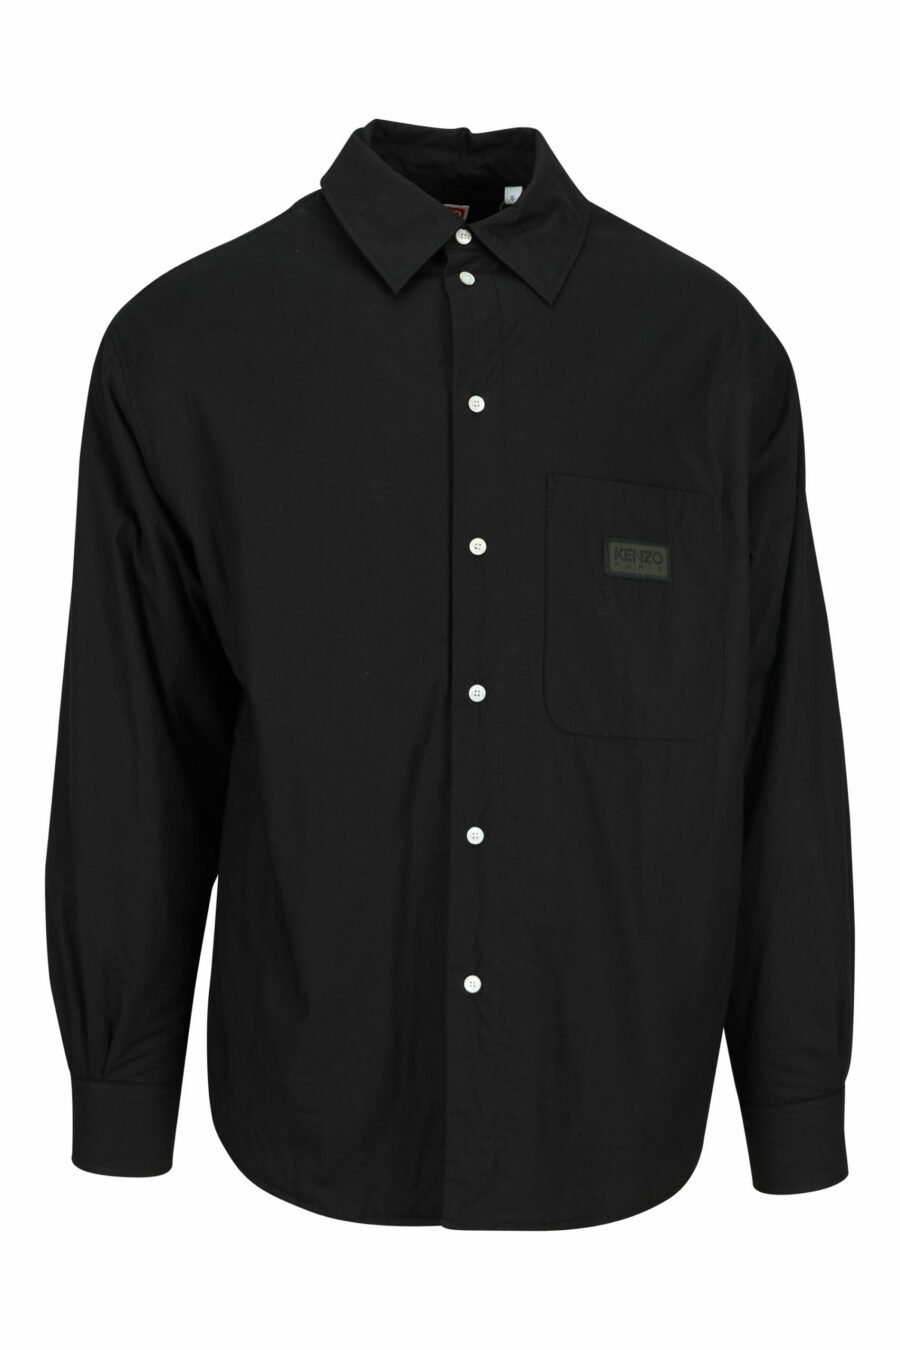 Camisa negra "oversize" con logo "kenzo tag" - 3612230585003 scaled